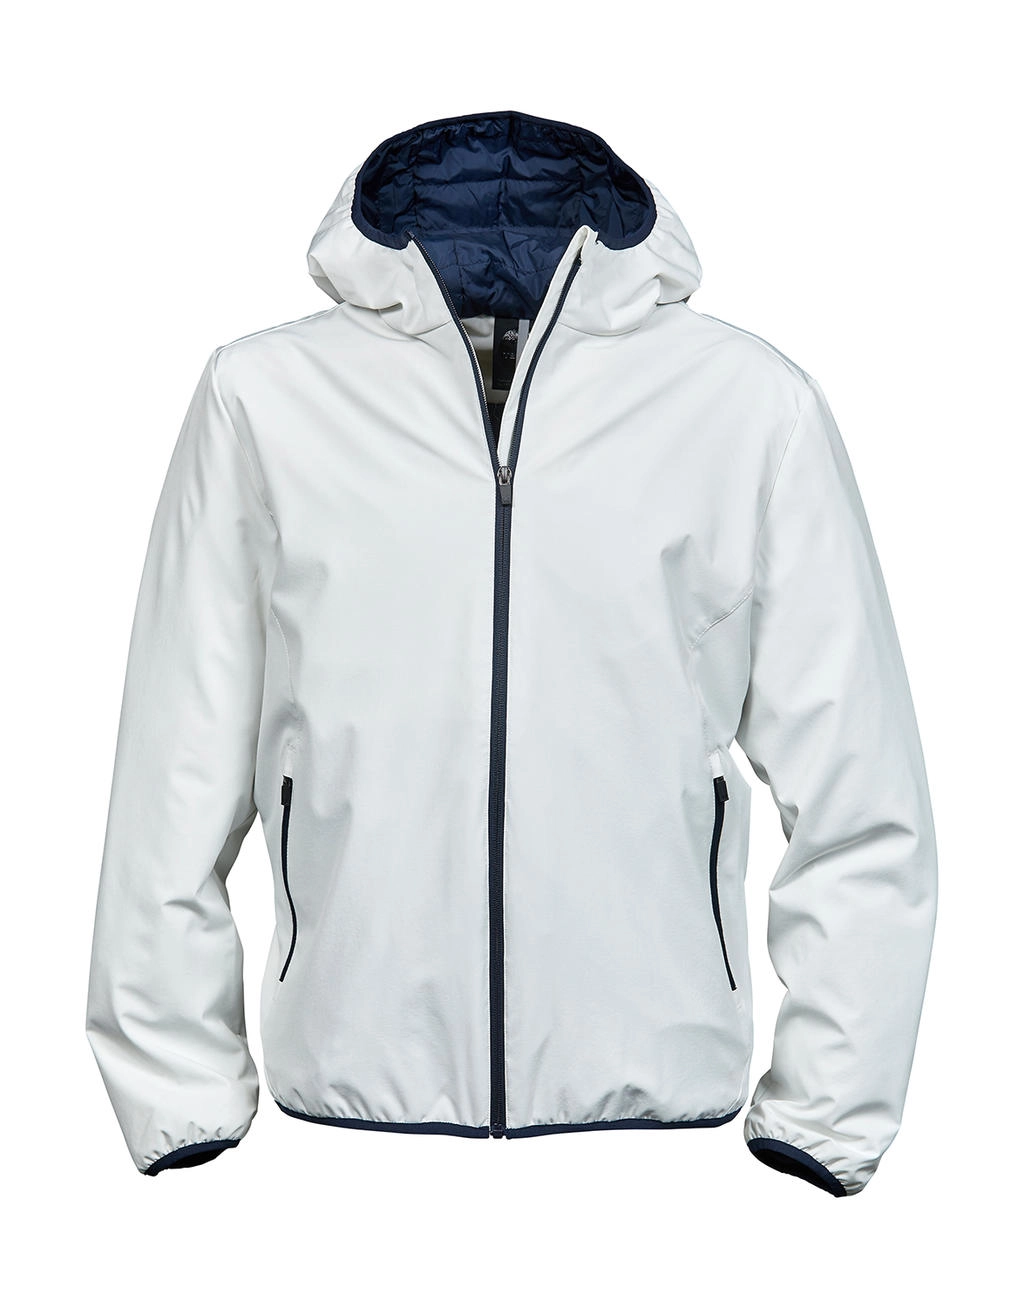 Competition Jacket zum Besticken und Bedrucken in der Farbe Snow/Navy mit Ihren Logo, Schriftzug oder Motiv.